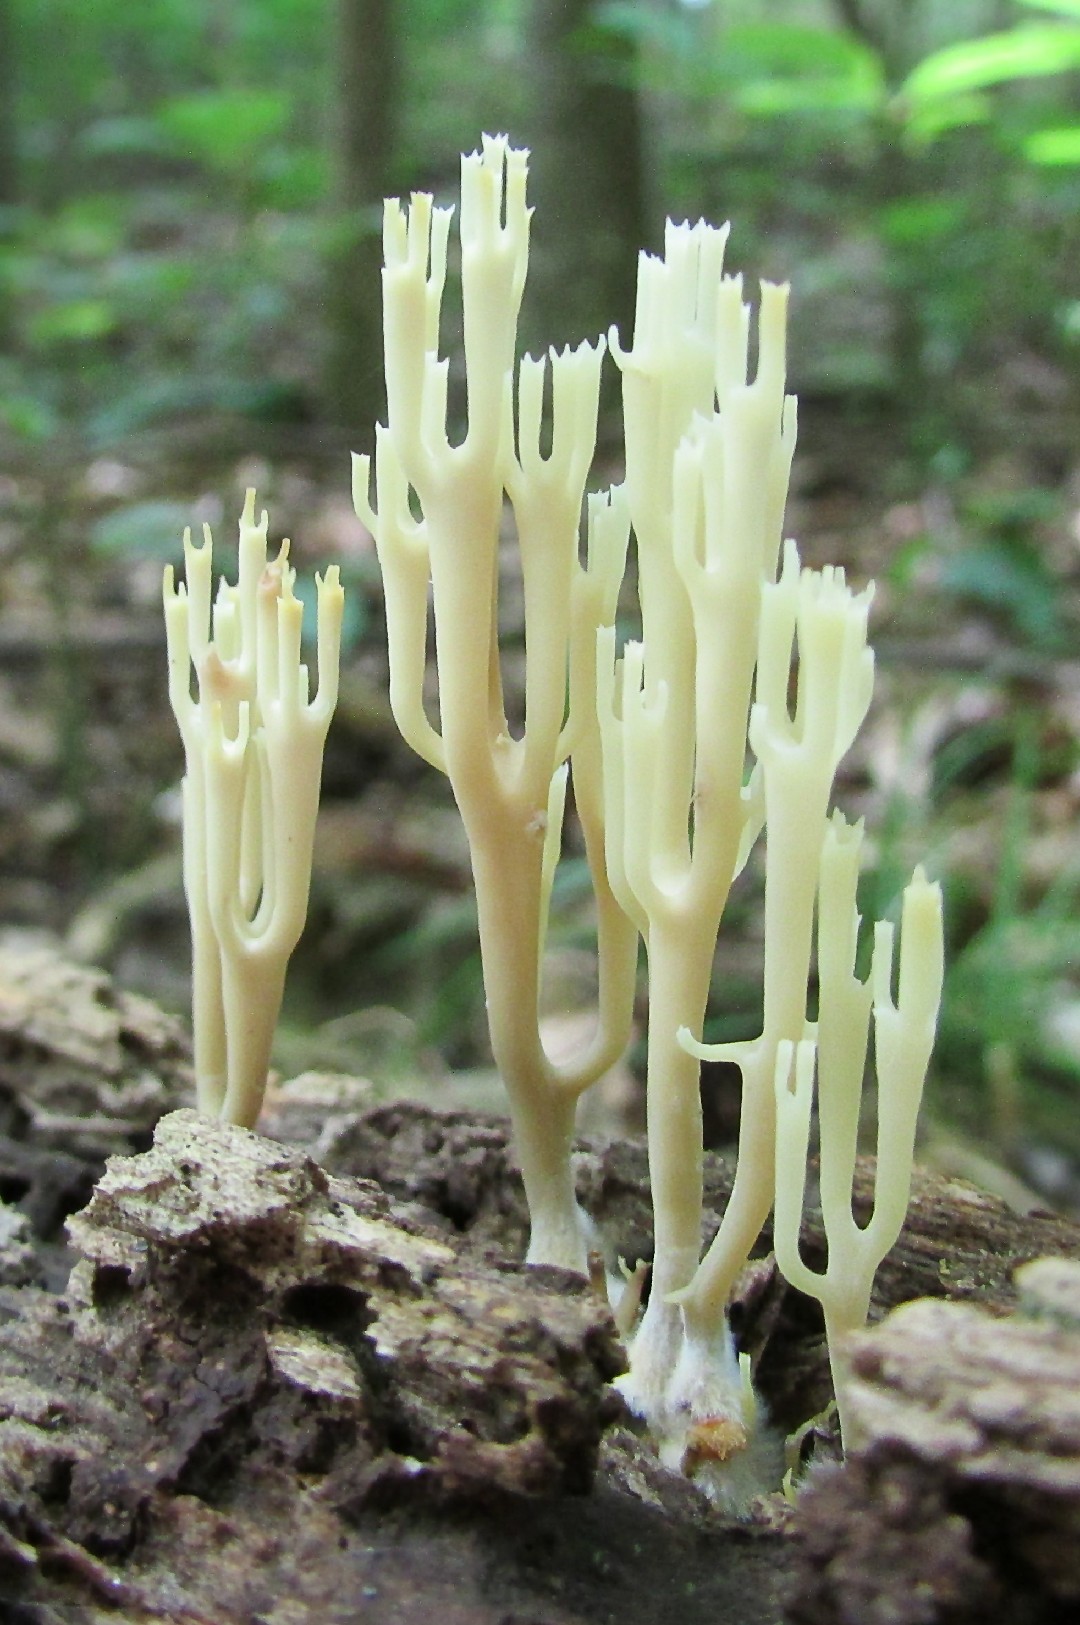 좀나무싸리버섯 (Artomyces pyxidatus)